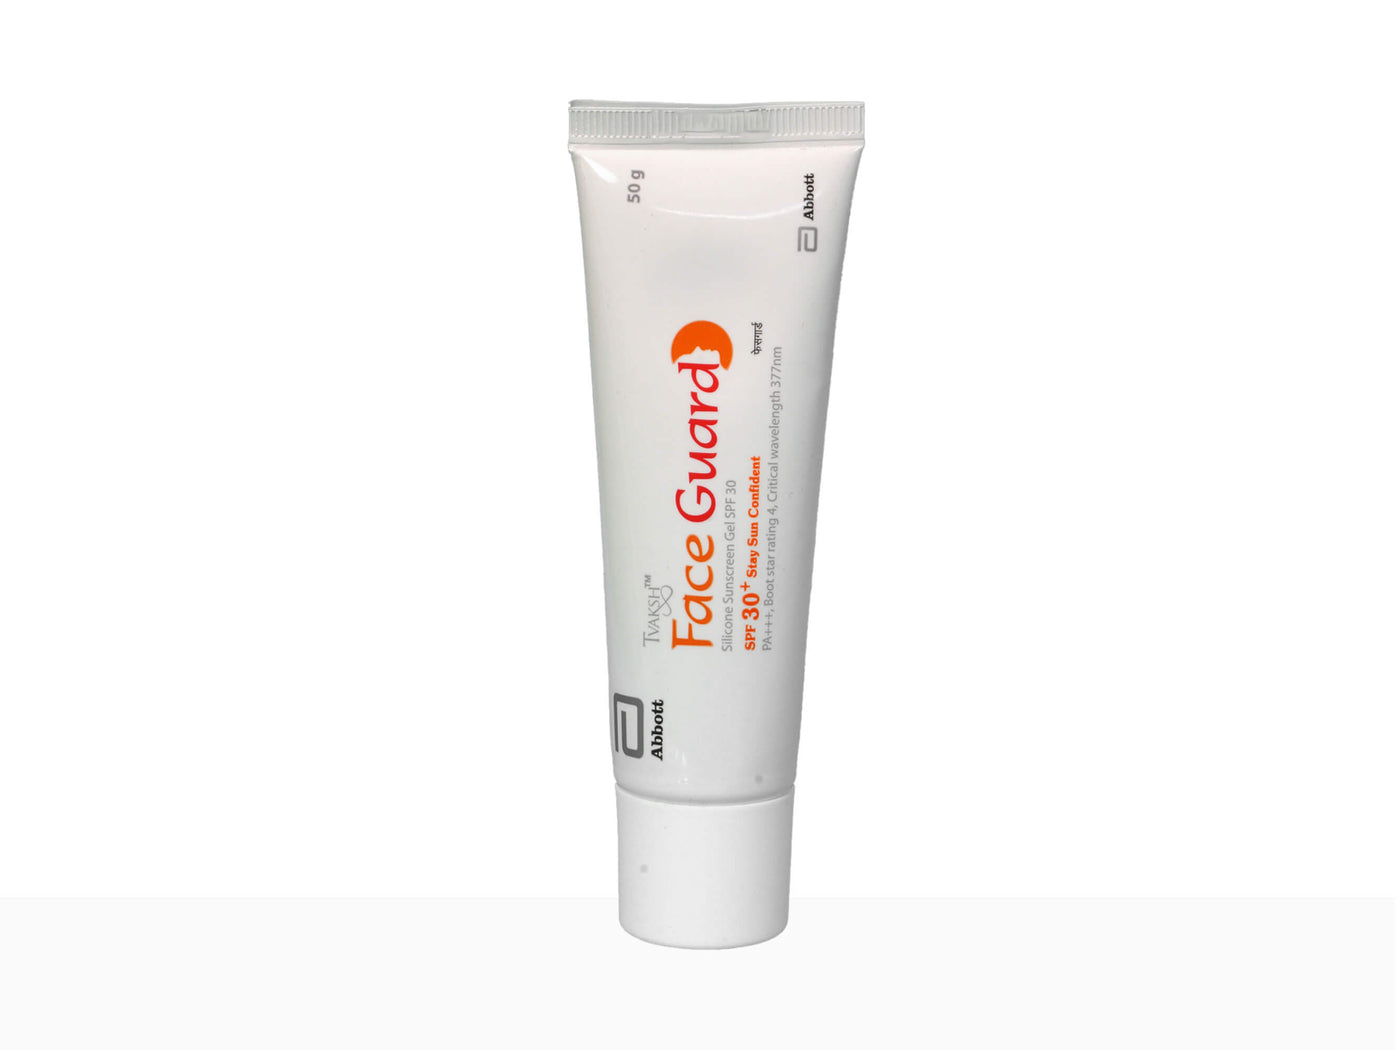 Face Guard spf 30 (silicon sunscreen gel)